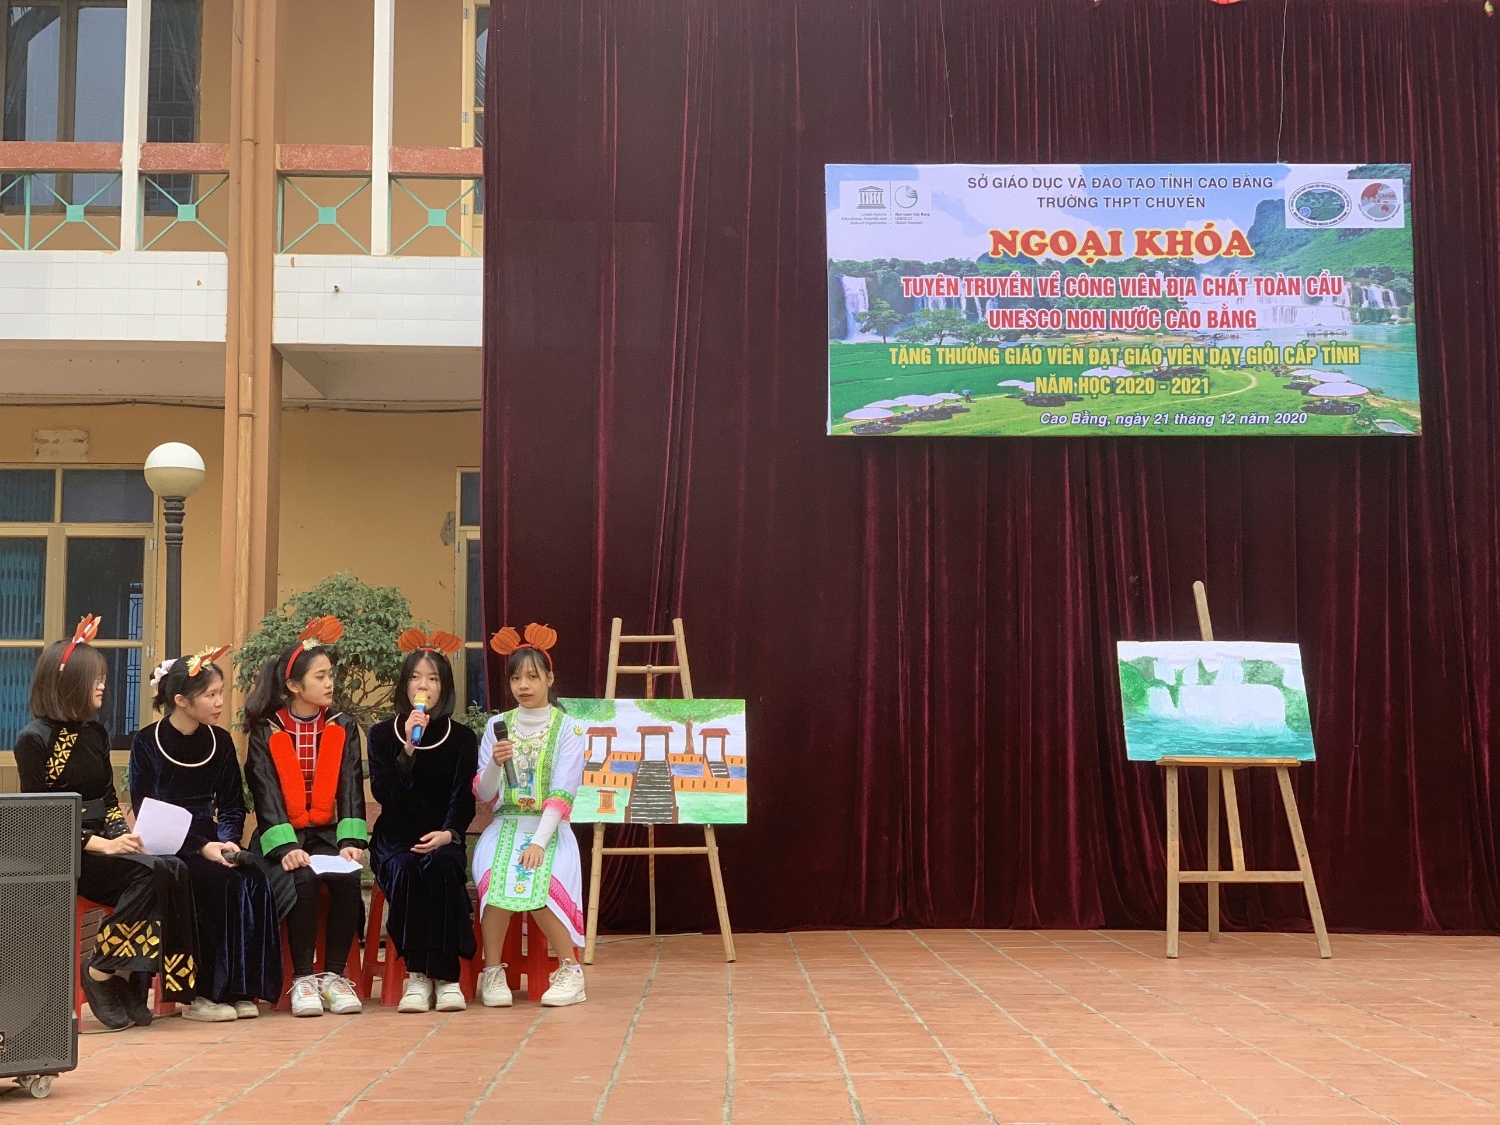 Hoạt động ngoại khoá tuyên truyền về CVĐC Non nước Cao Bằng tại trường THPT Thành phố Cao Bằng